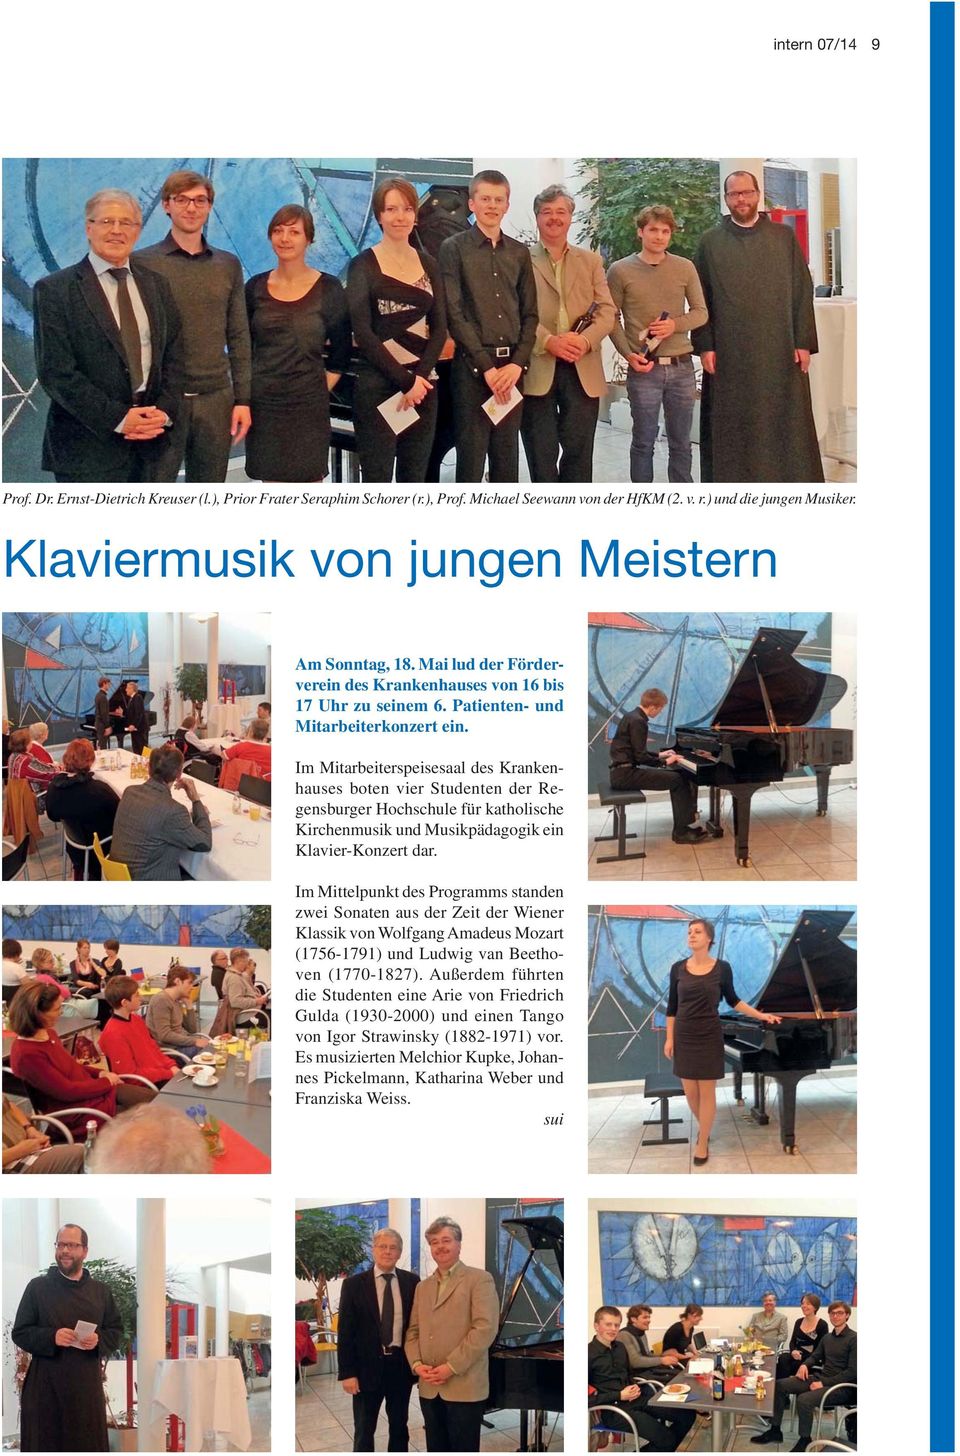 Im Mitarbeiterspeisesaal des Krankenhauses boten vier Studenten der Regensburger Hochschule für katholische Kirchenmusik und Musikpädagogik ein Klavier-Konzert dar.